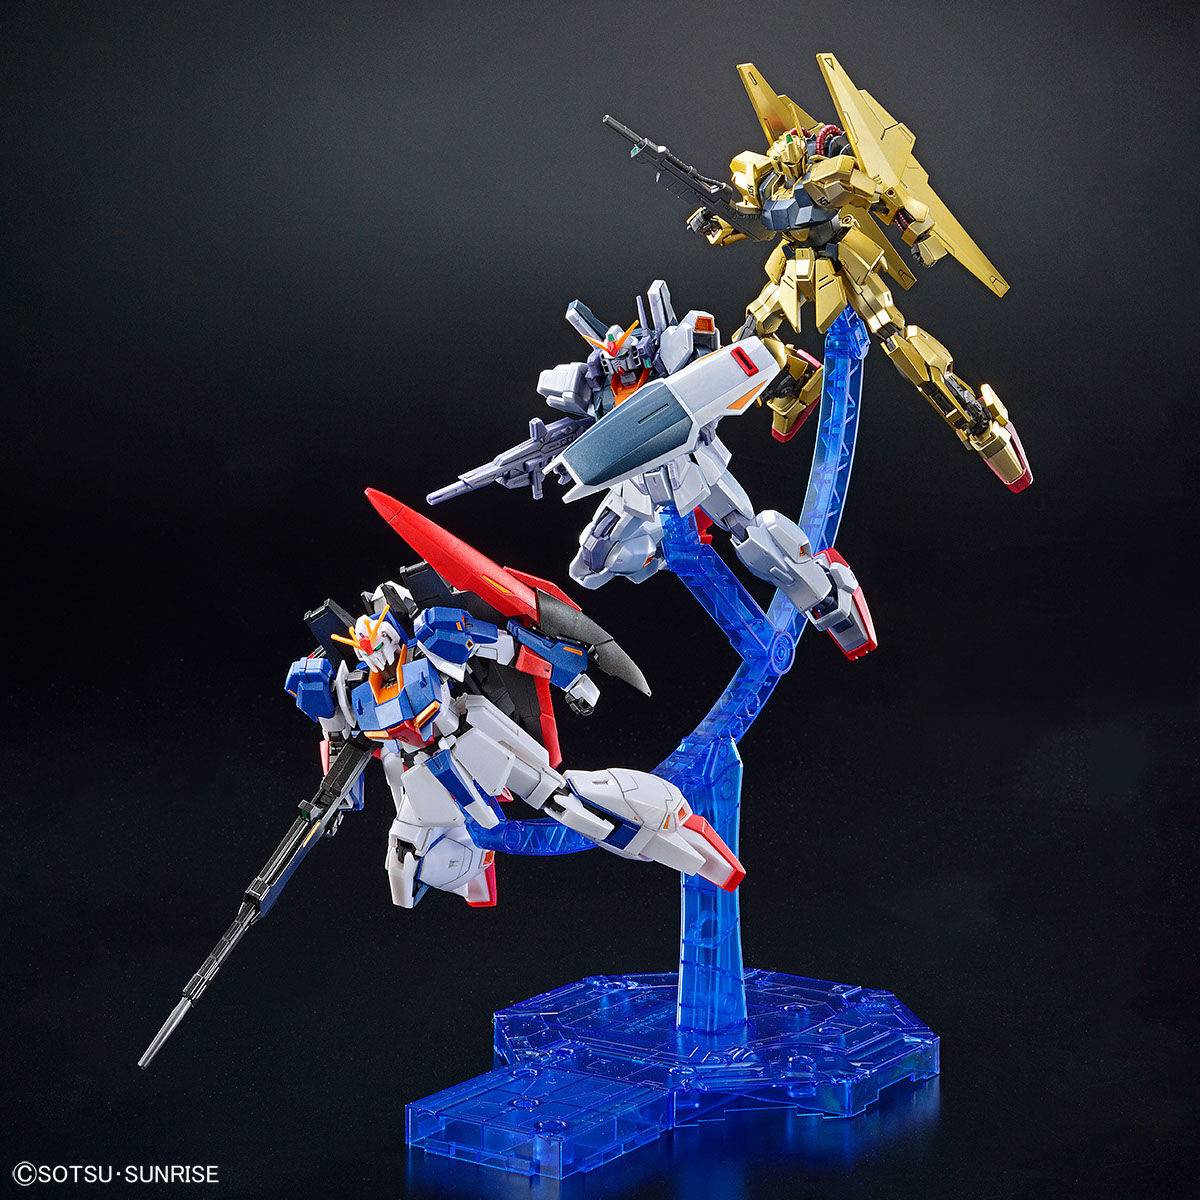 HG 1/144 Gundam Base Limited Zeta Gundam [UC0088]/Hyakushiki/Gundam Mk-II (AEUG Spec) Set [Grips Campaign Special Color]